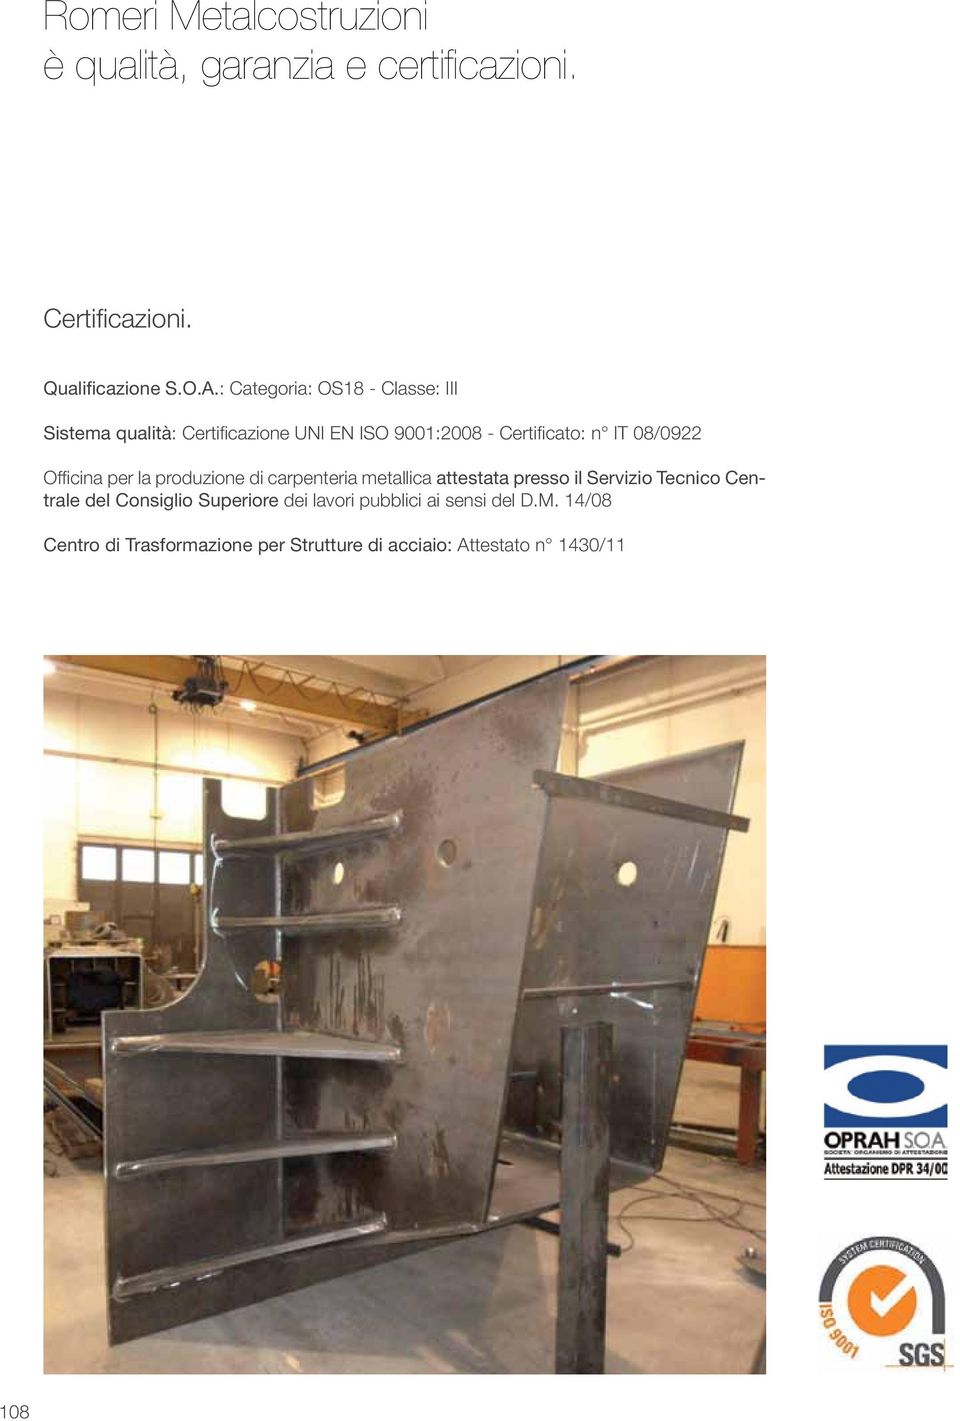 Officina per la produzione di carpenteria metallica attestata presso il Servizio Tecnico Centrale del Consiglio